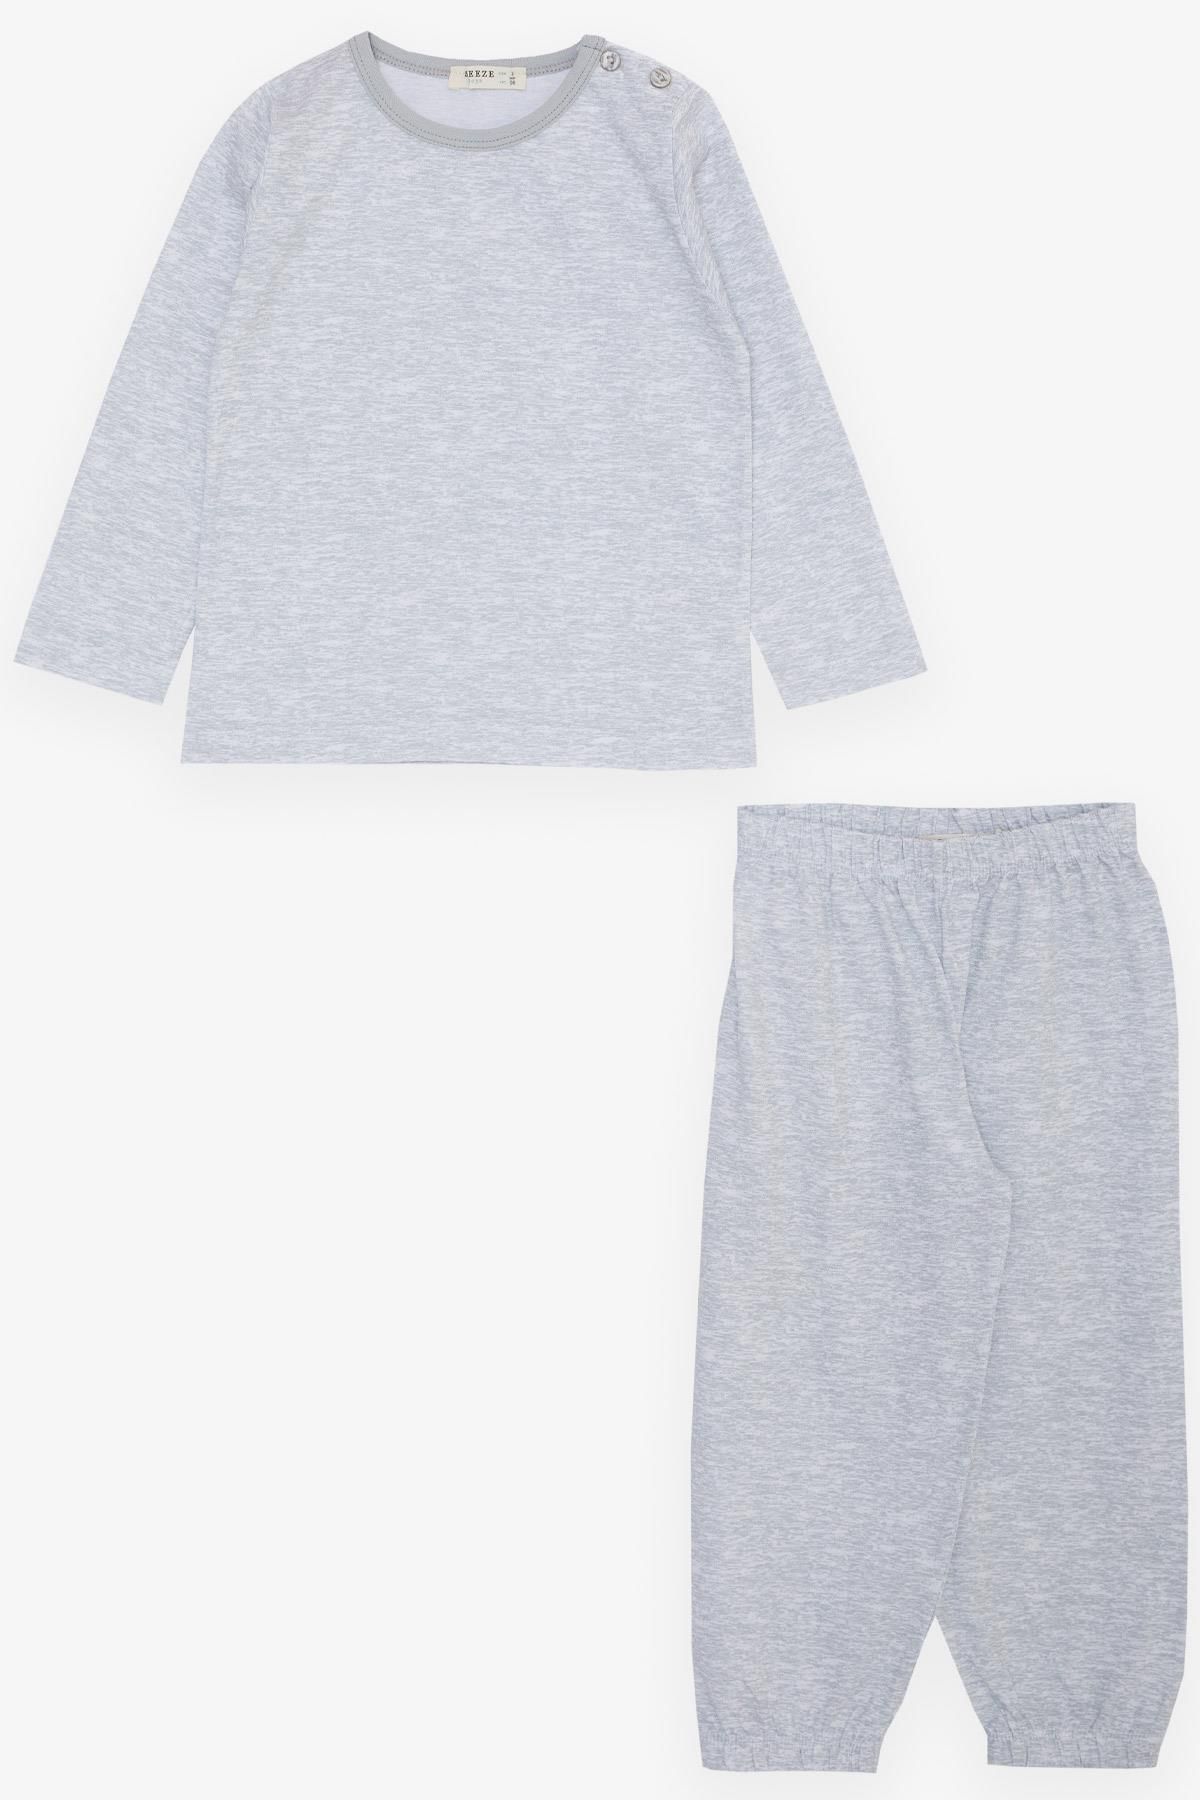 Breeze Erkek Çocuk Pijama Takımı Basic 1-3 Yaş, Açık Gri Melanj